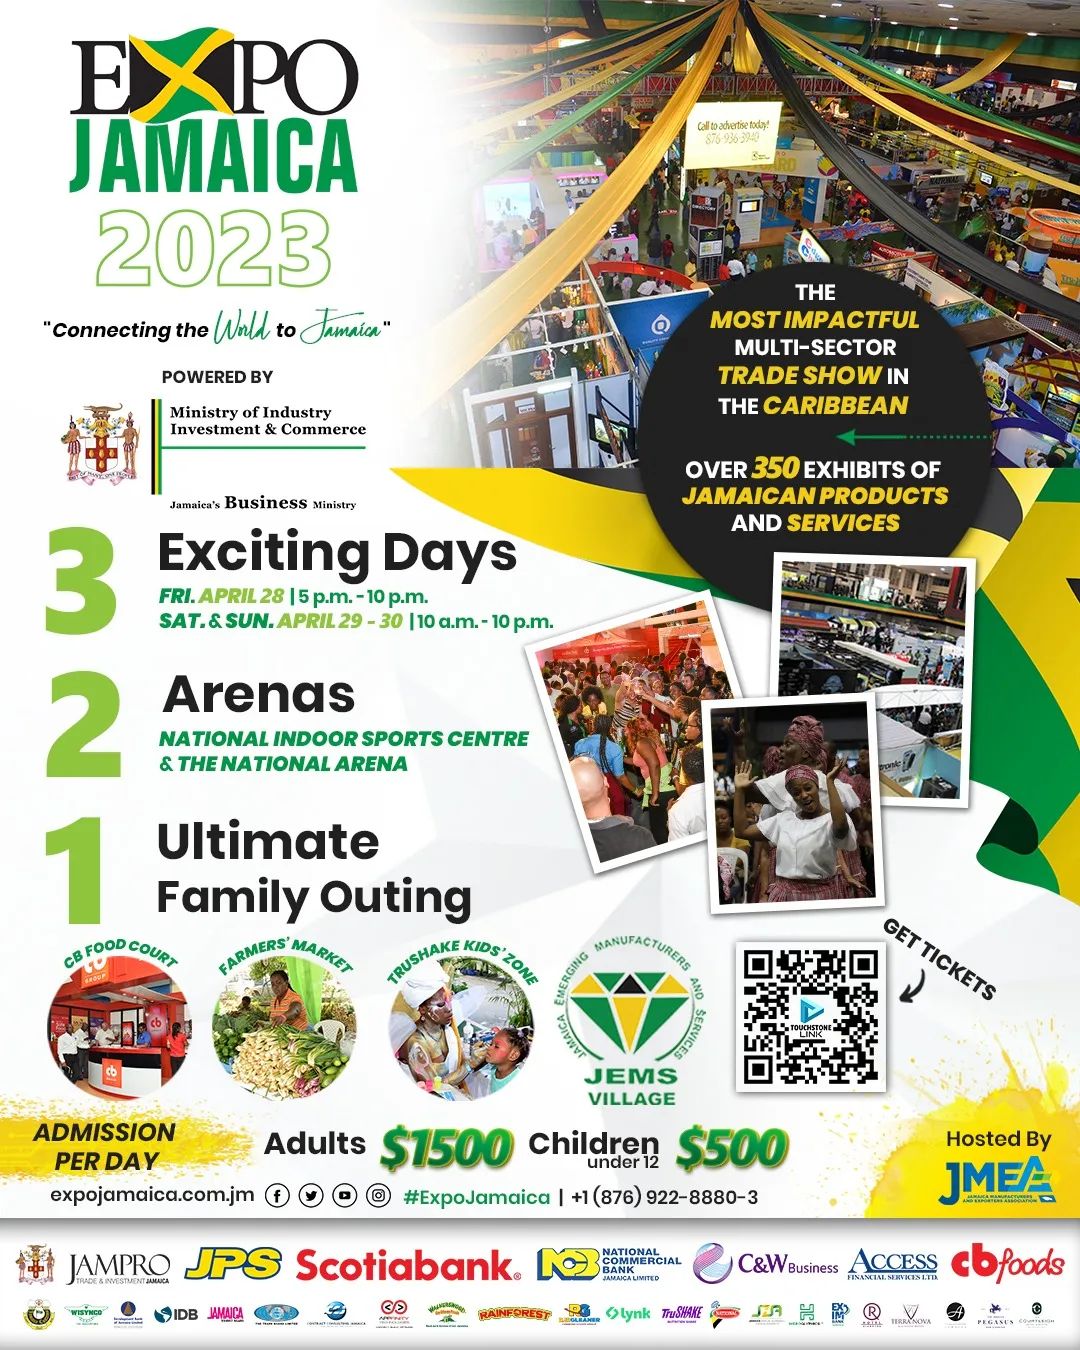 Expo Jamaica 2023